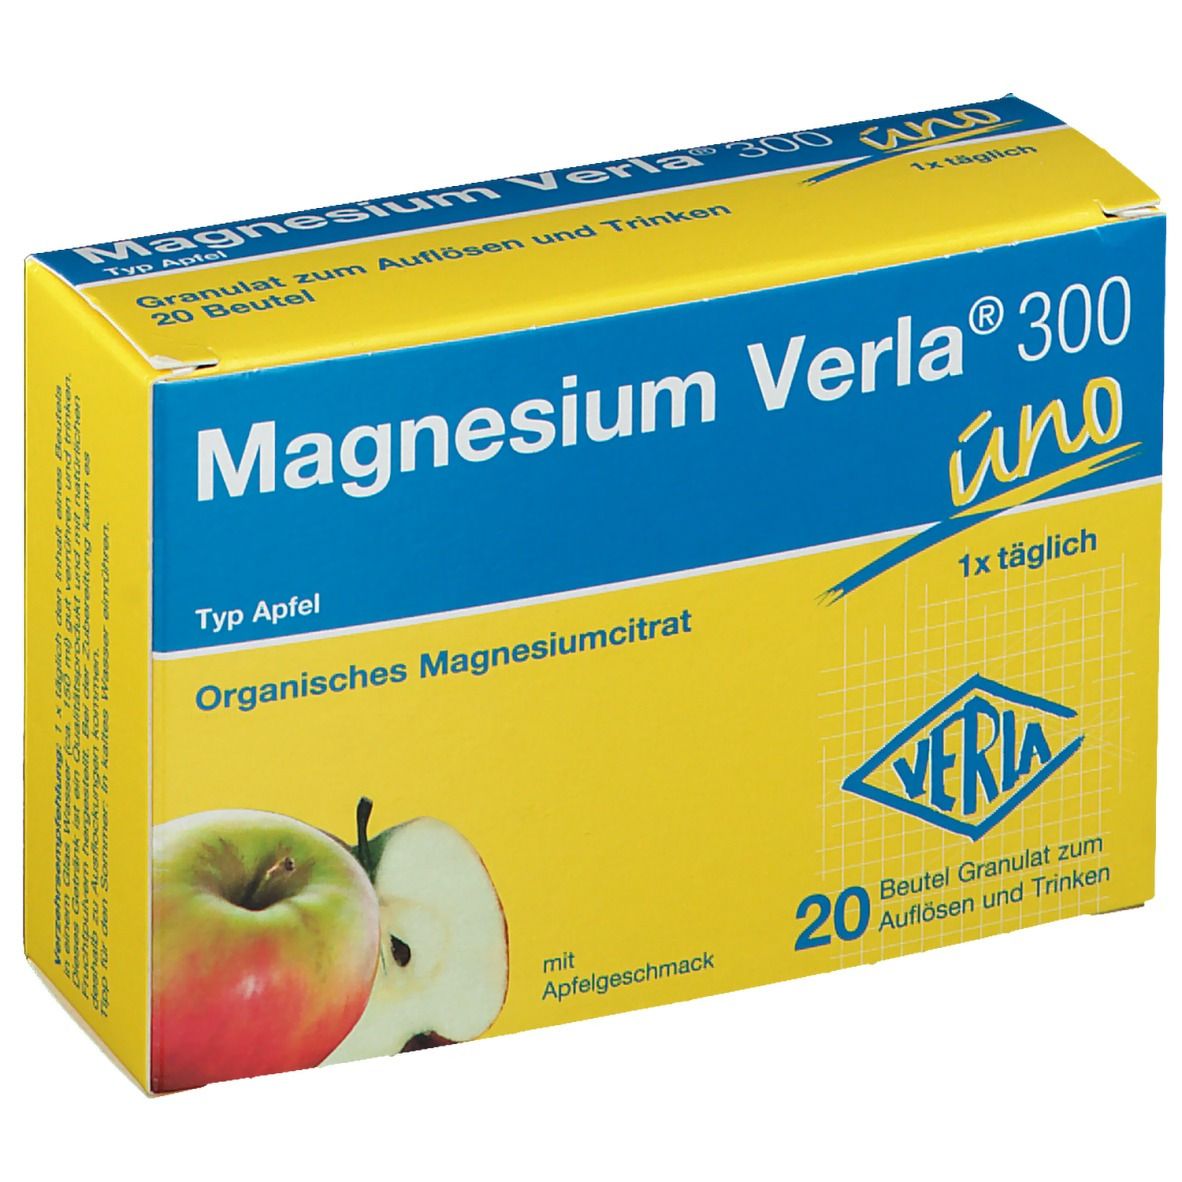 Beutel 10405100 Magnesium Verla 300 uno Typ Apfel Granulat... 50 St 